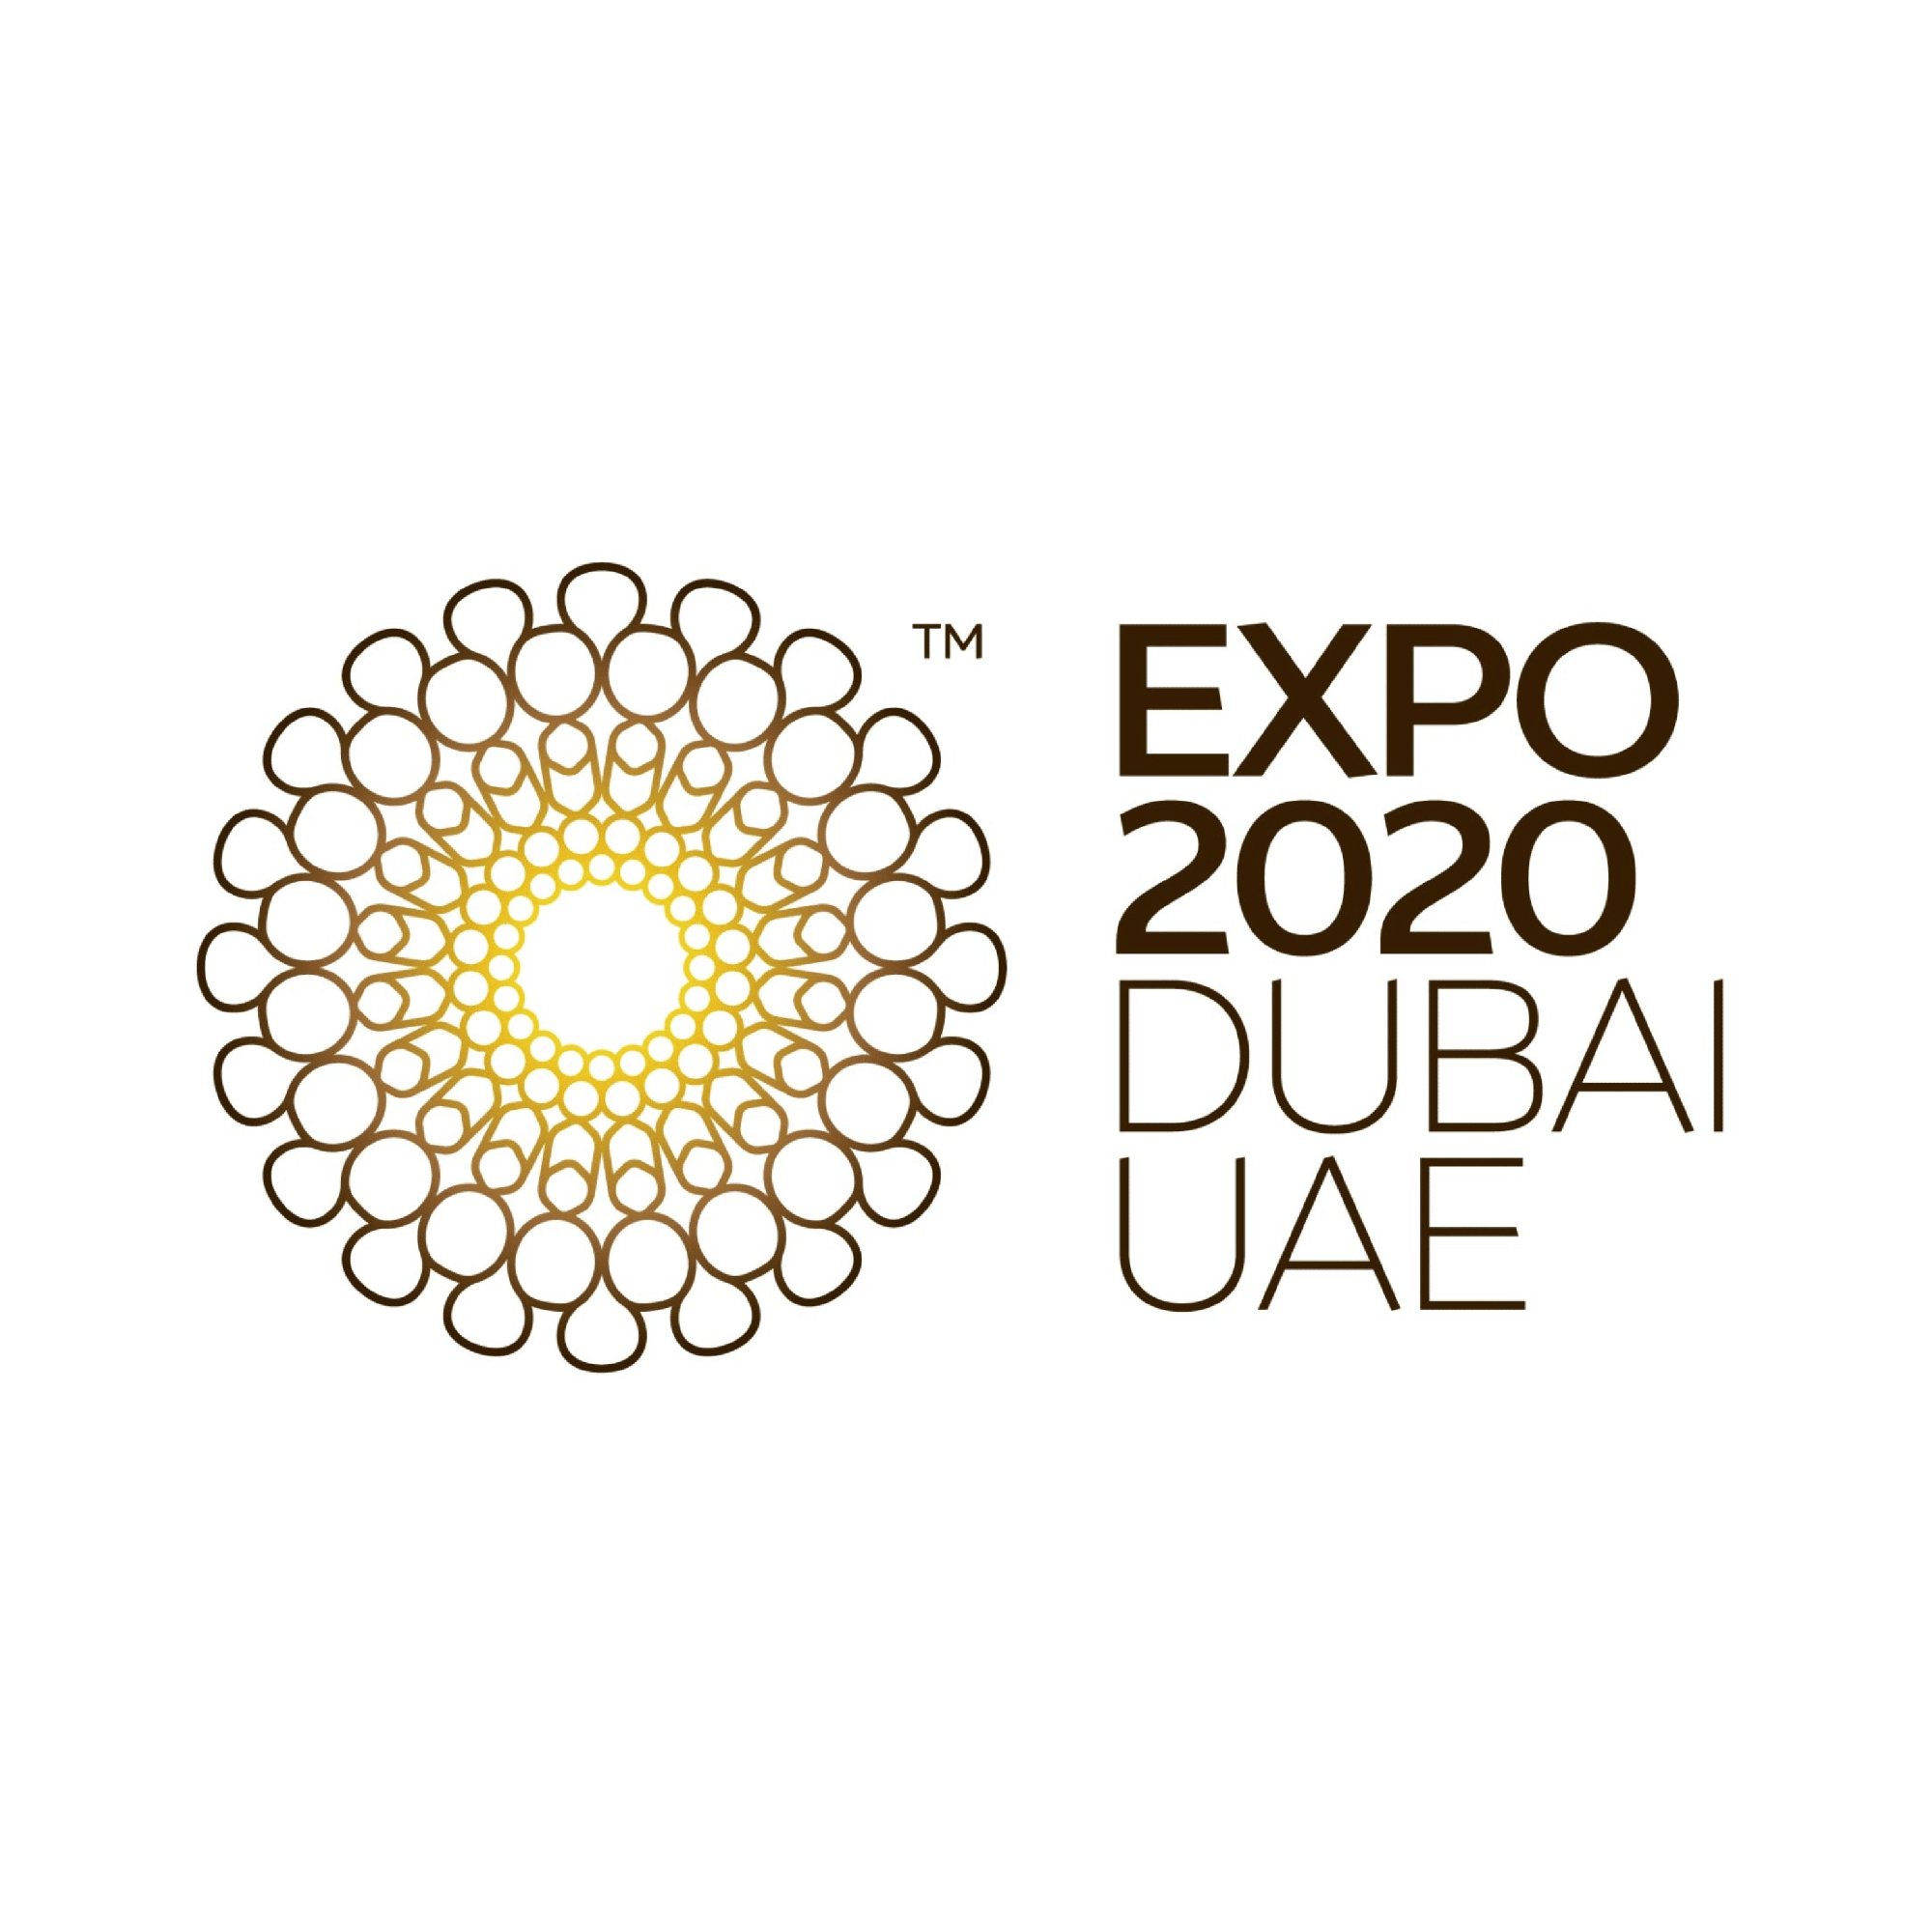 Collection of Expo 2020 Dubai